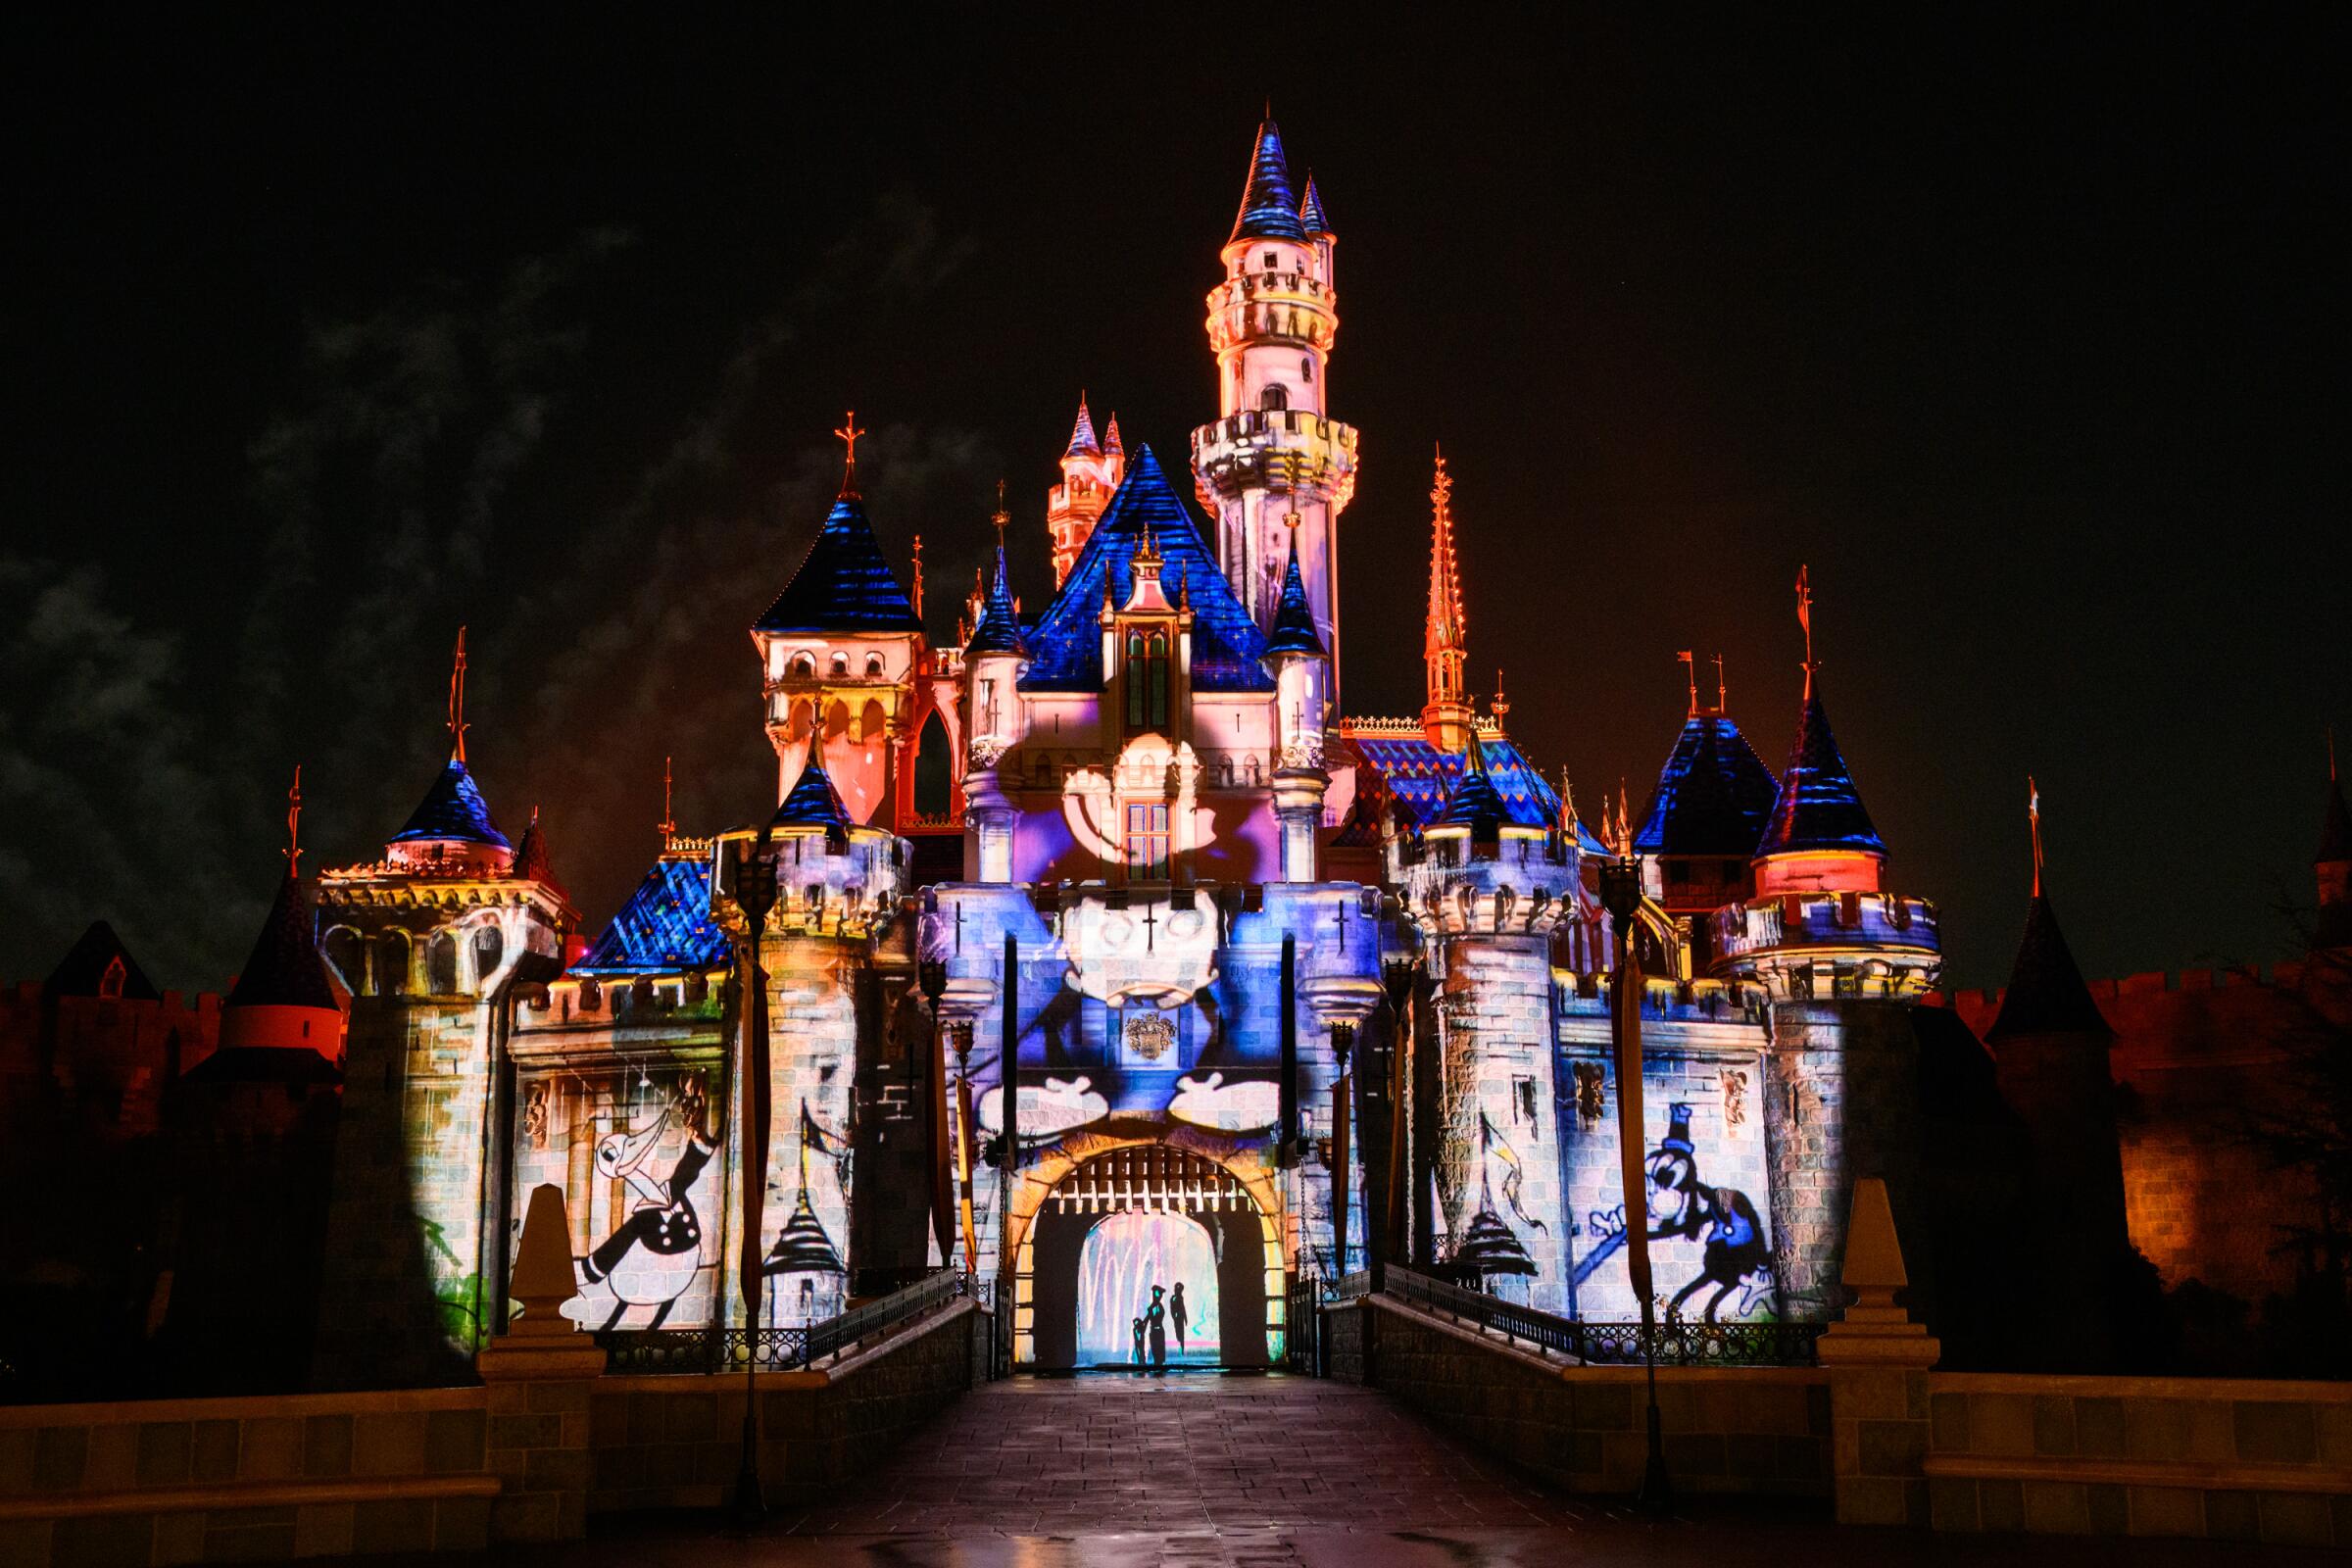 WISH: Lo nuevo de Disney que celebra sus 100 años